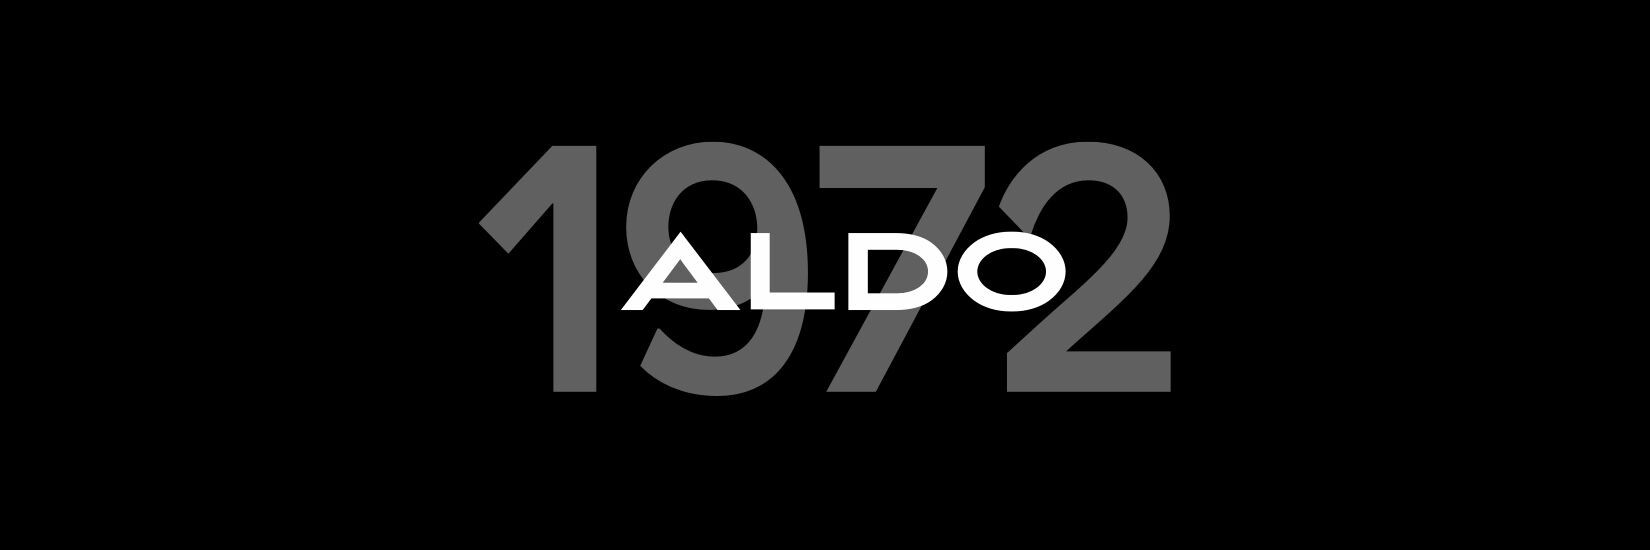 1972, año de fundación de ALDO, sobre un fondo negro